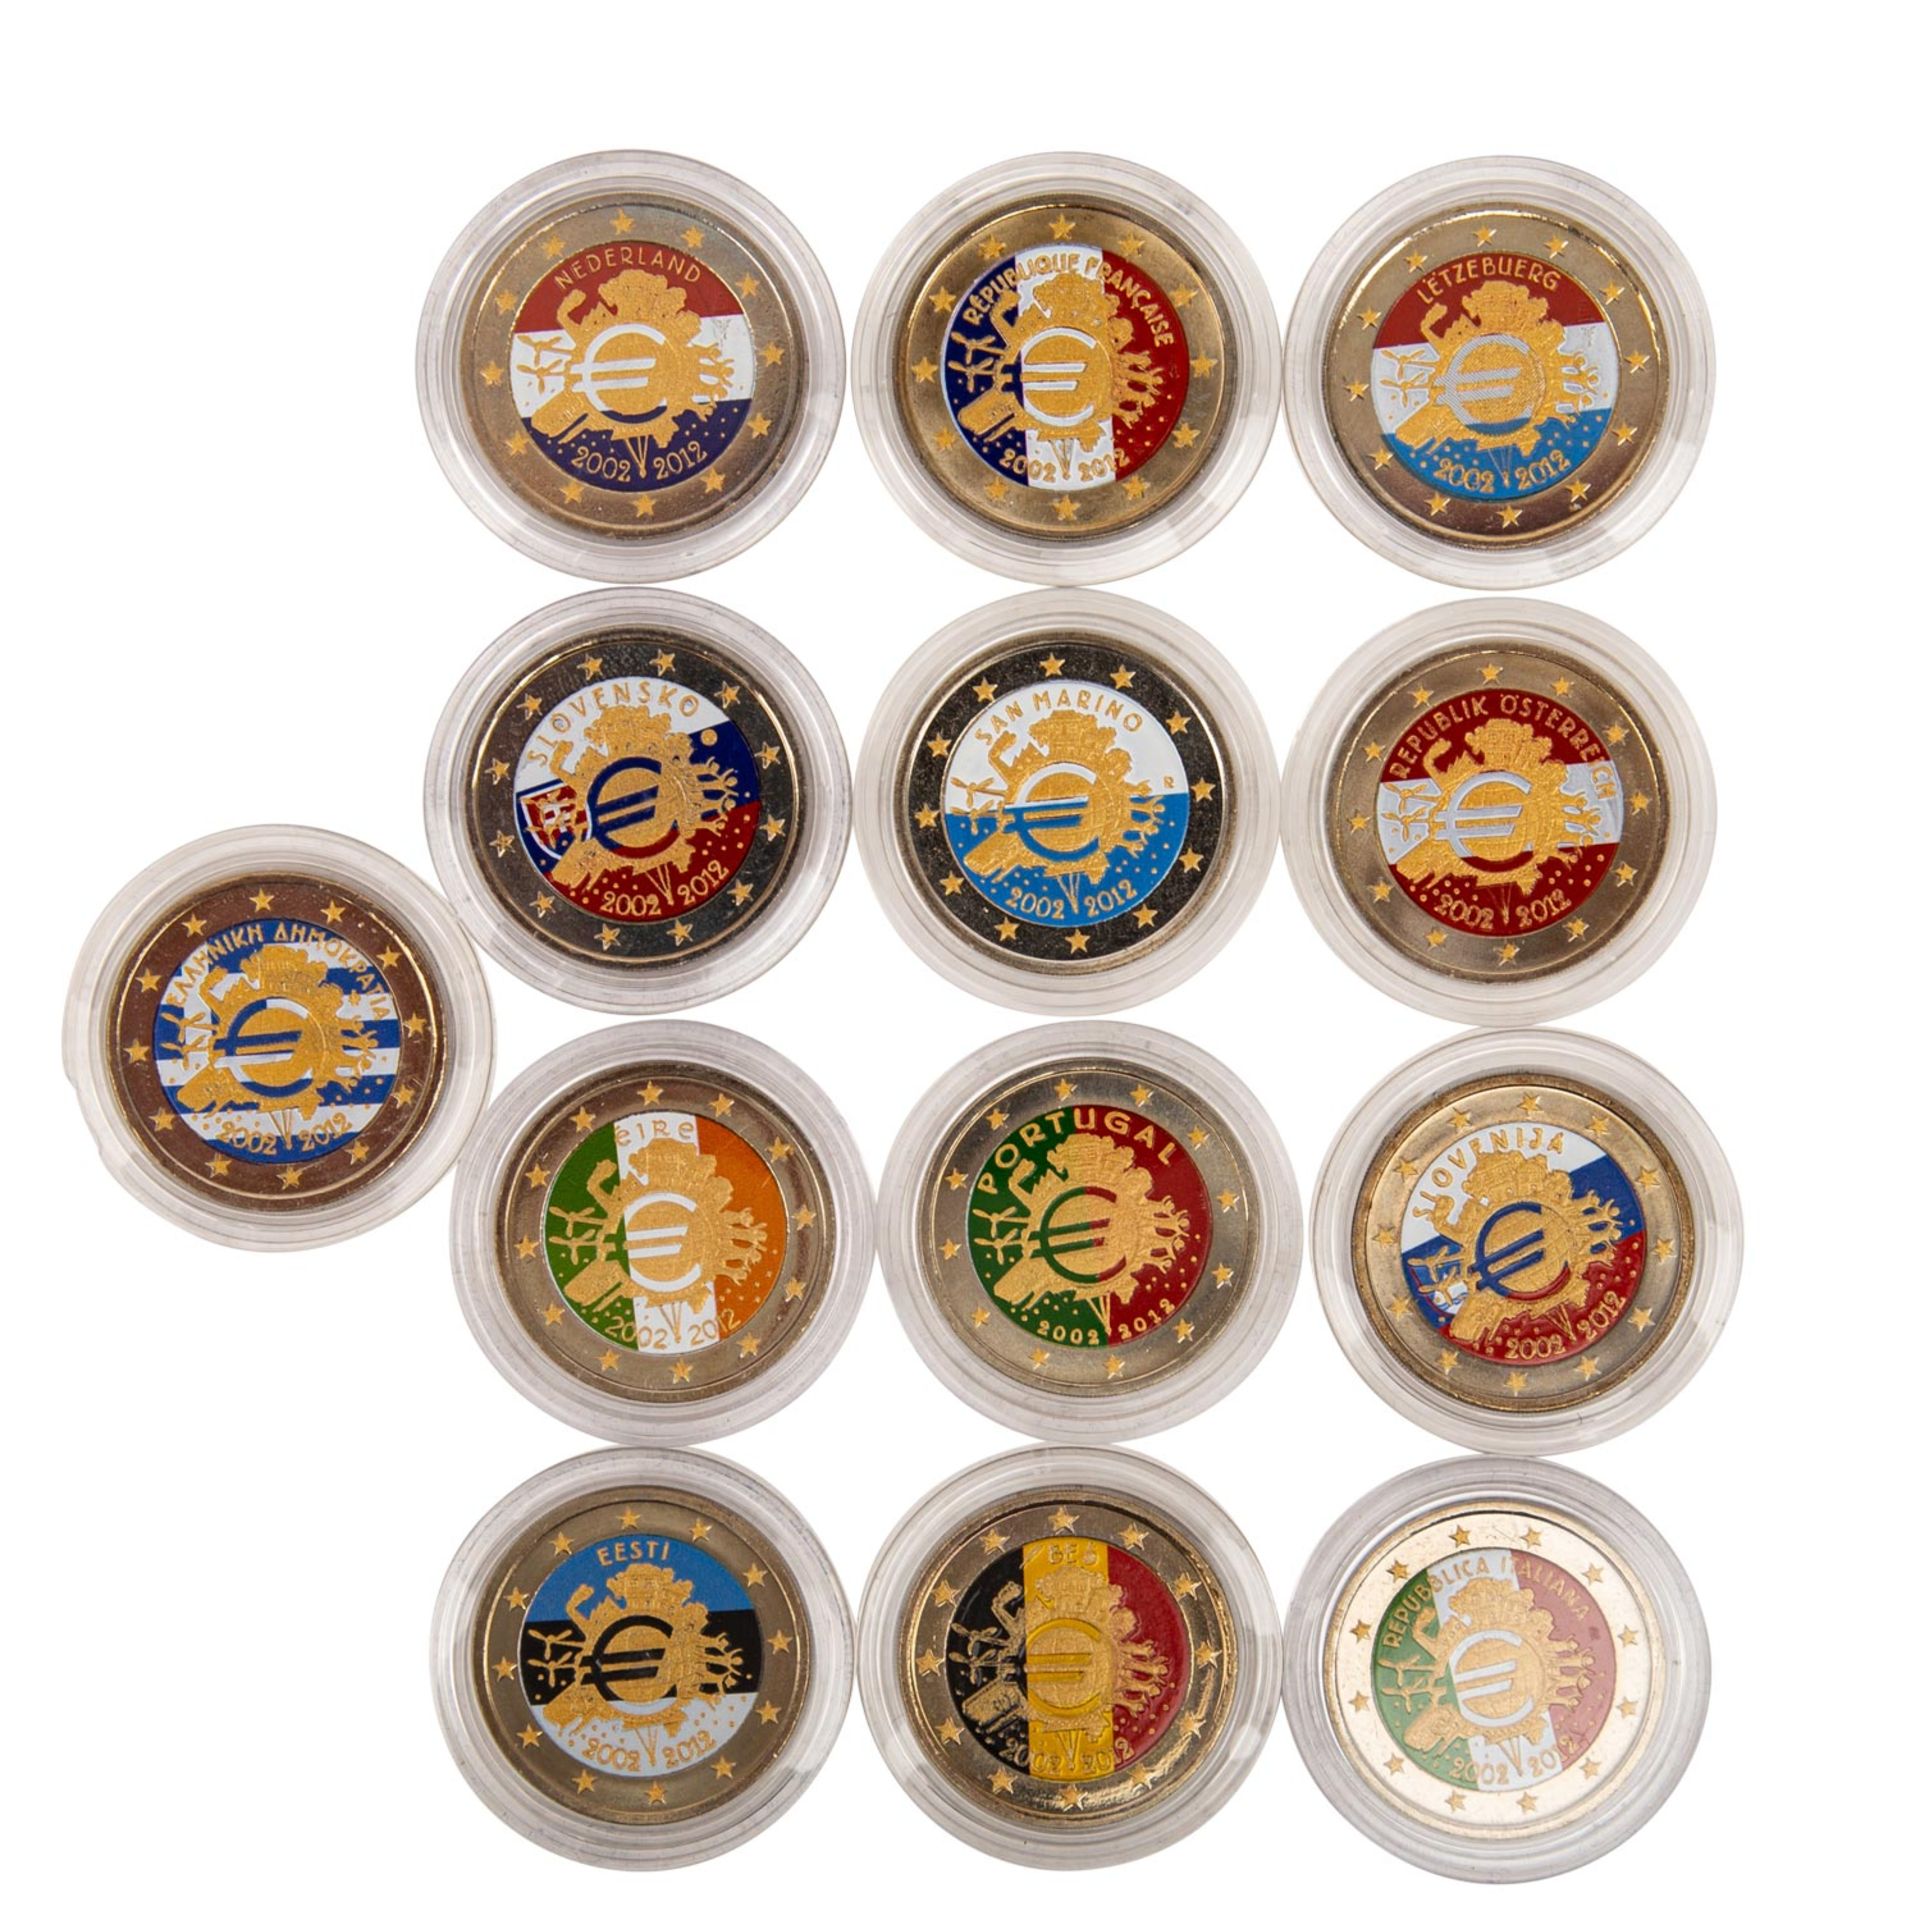 EUROPA Farbmünzen Eine Sammlung von insgesamt ca. 60x 2€ Gedenkmünzen mit Farbauflagen, u.a. aus - Bild 4 aus 7